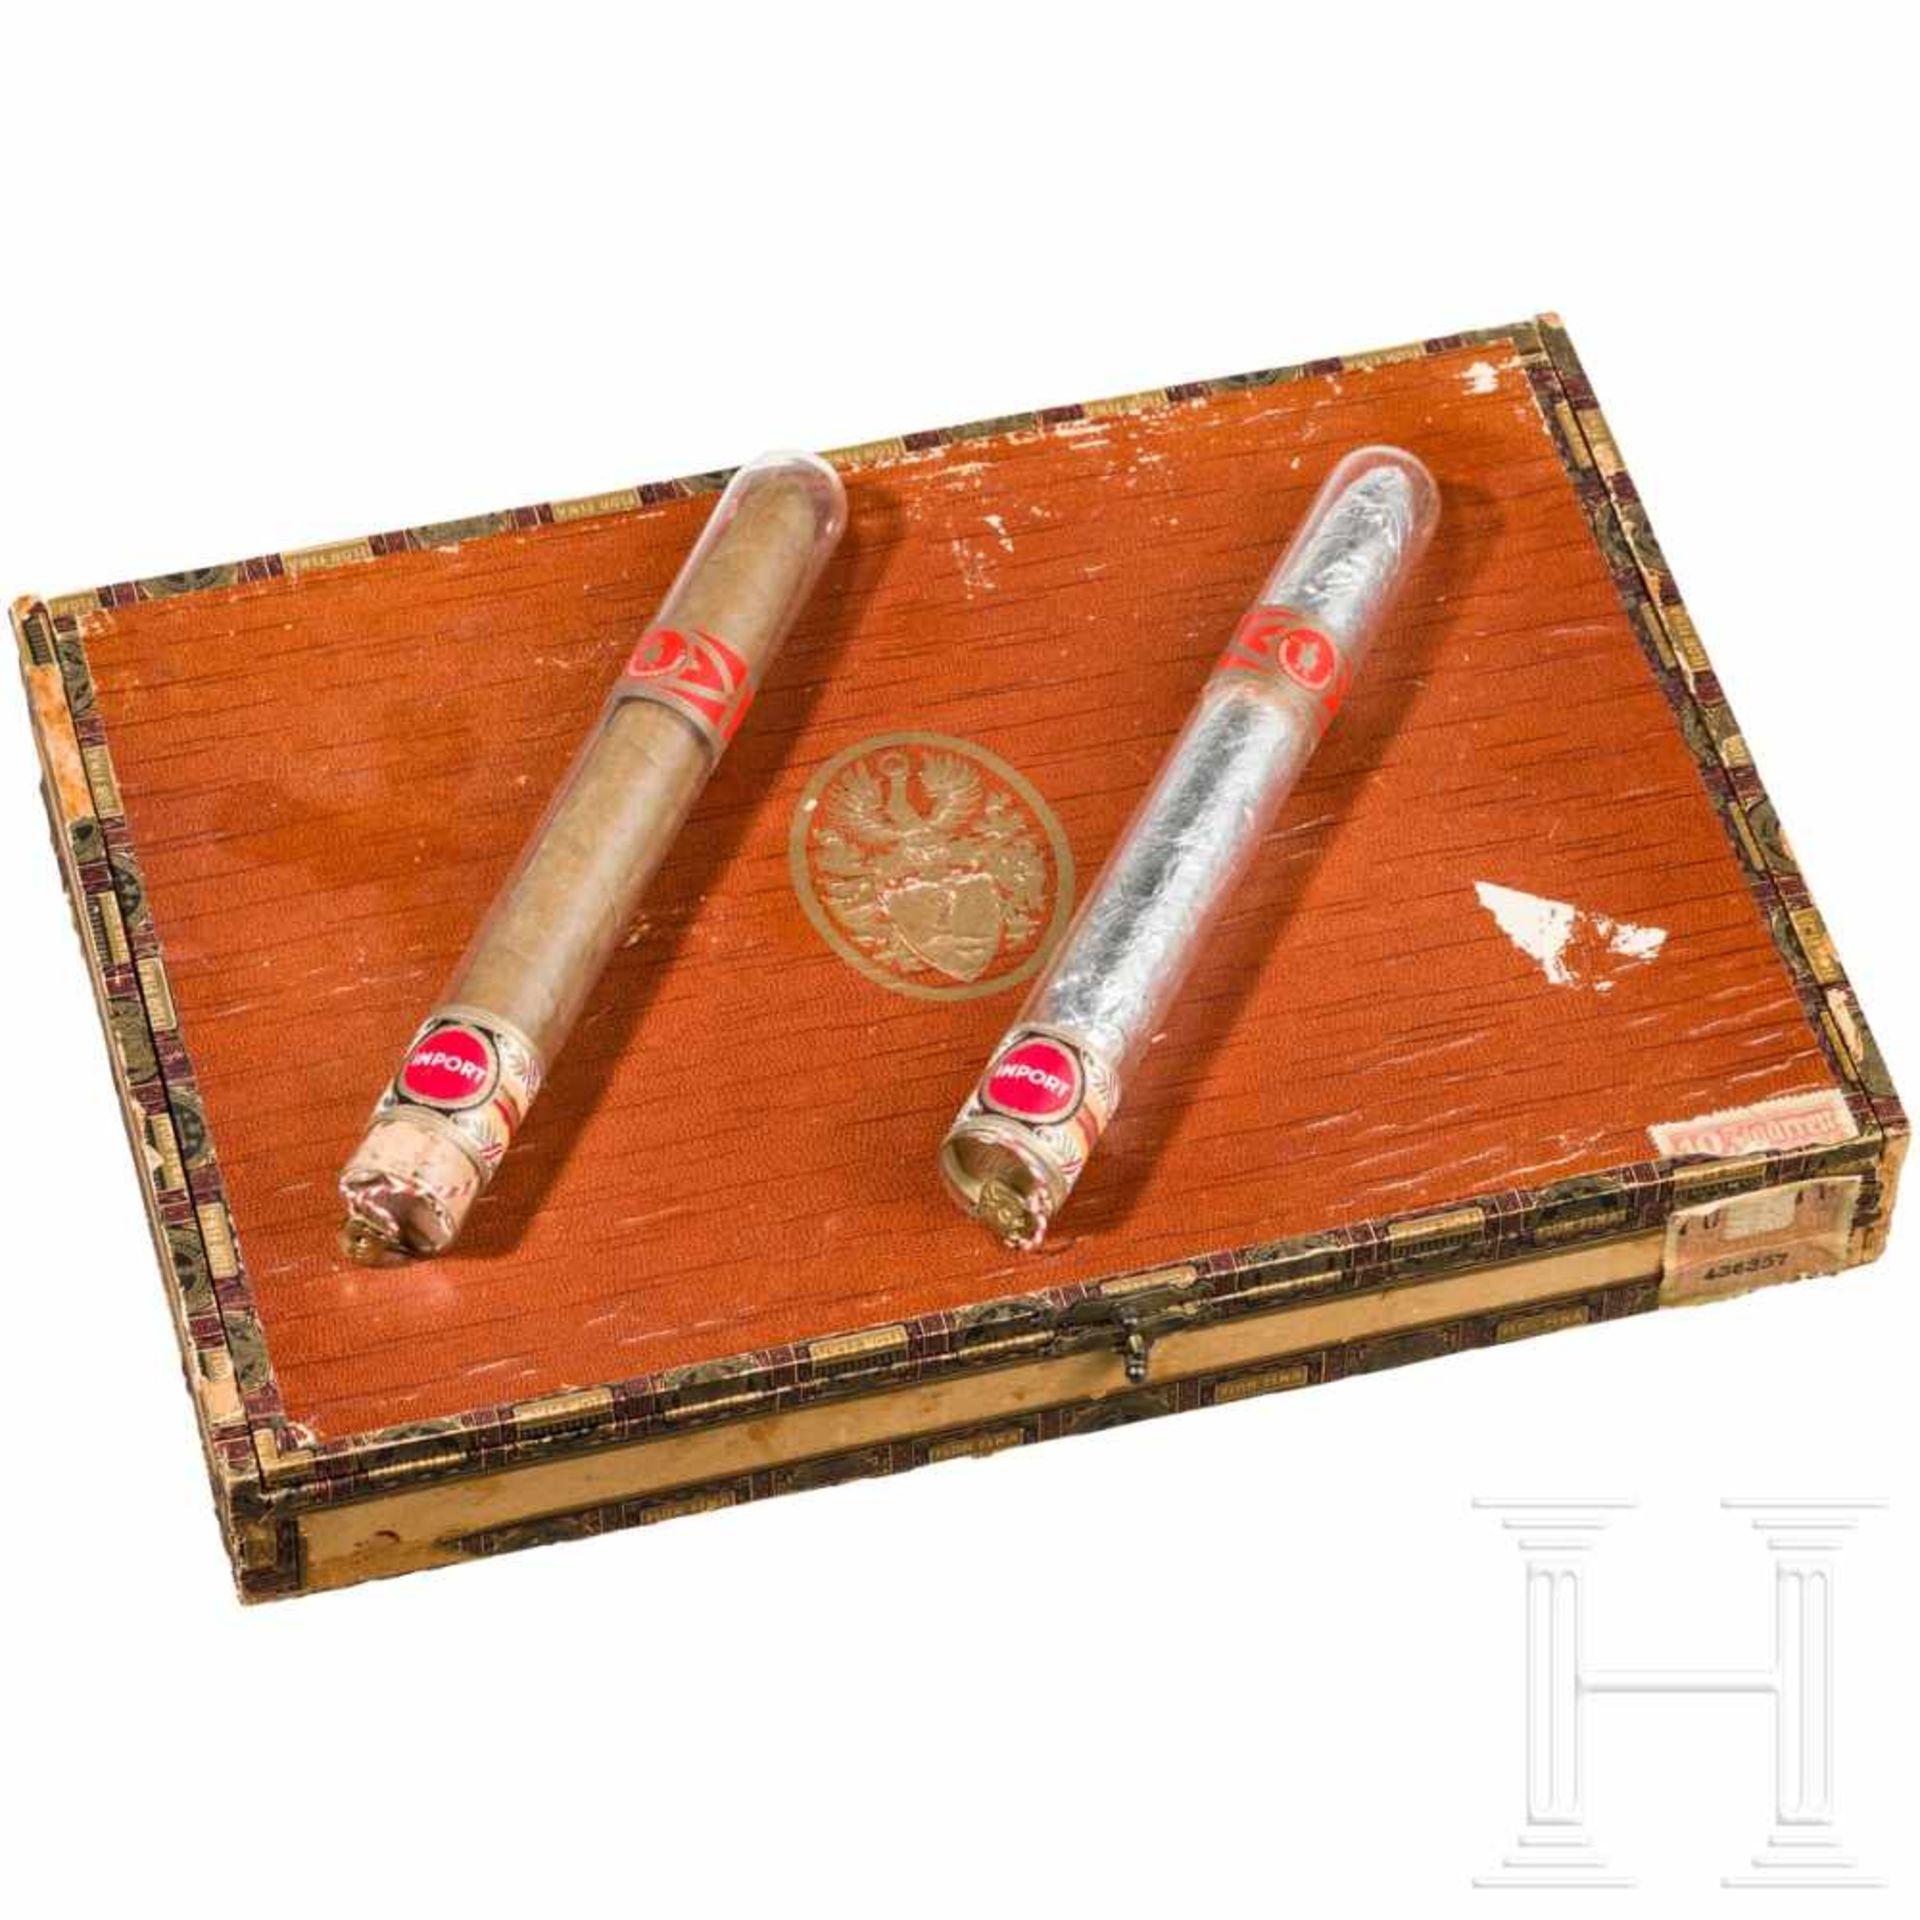 Zigarrenkiste aus der "Sonderanfertigung für Reichsmarschall Hermann Göring"Hölzerne Zigarrenkiste - Bild 2 aus 3